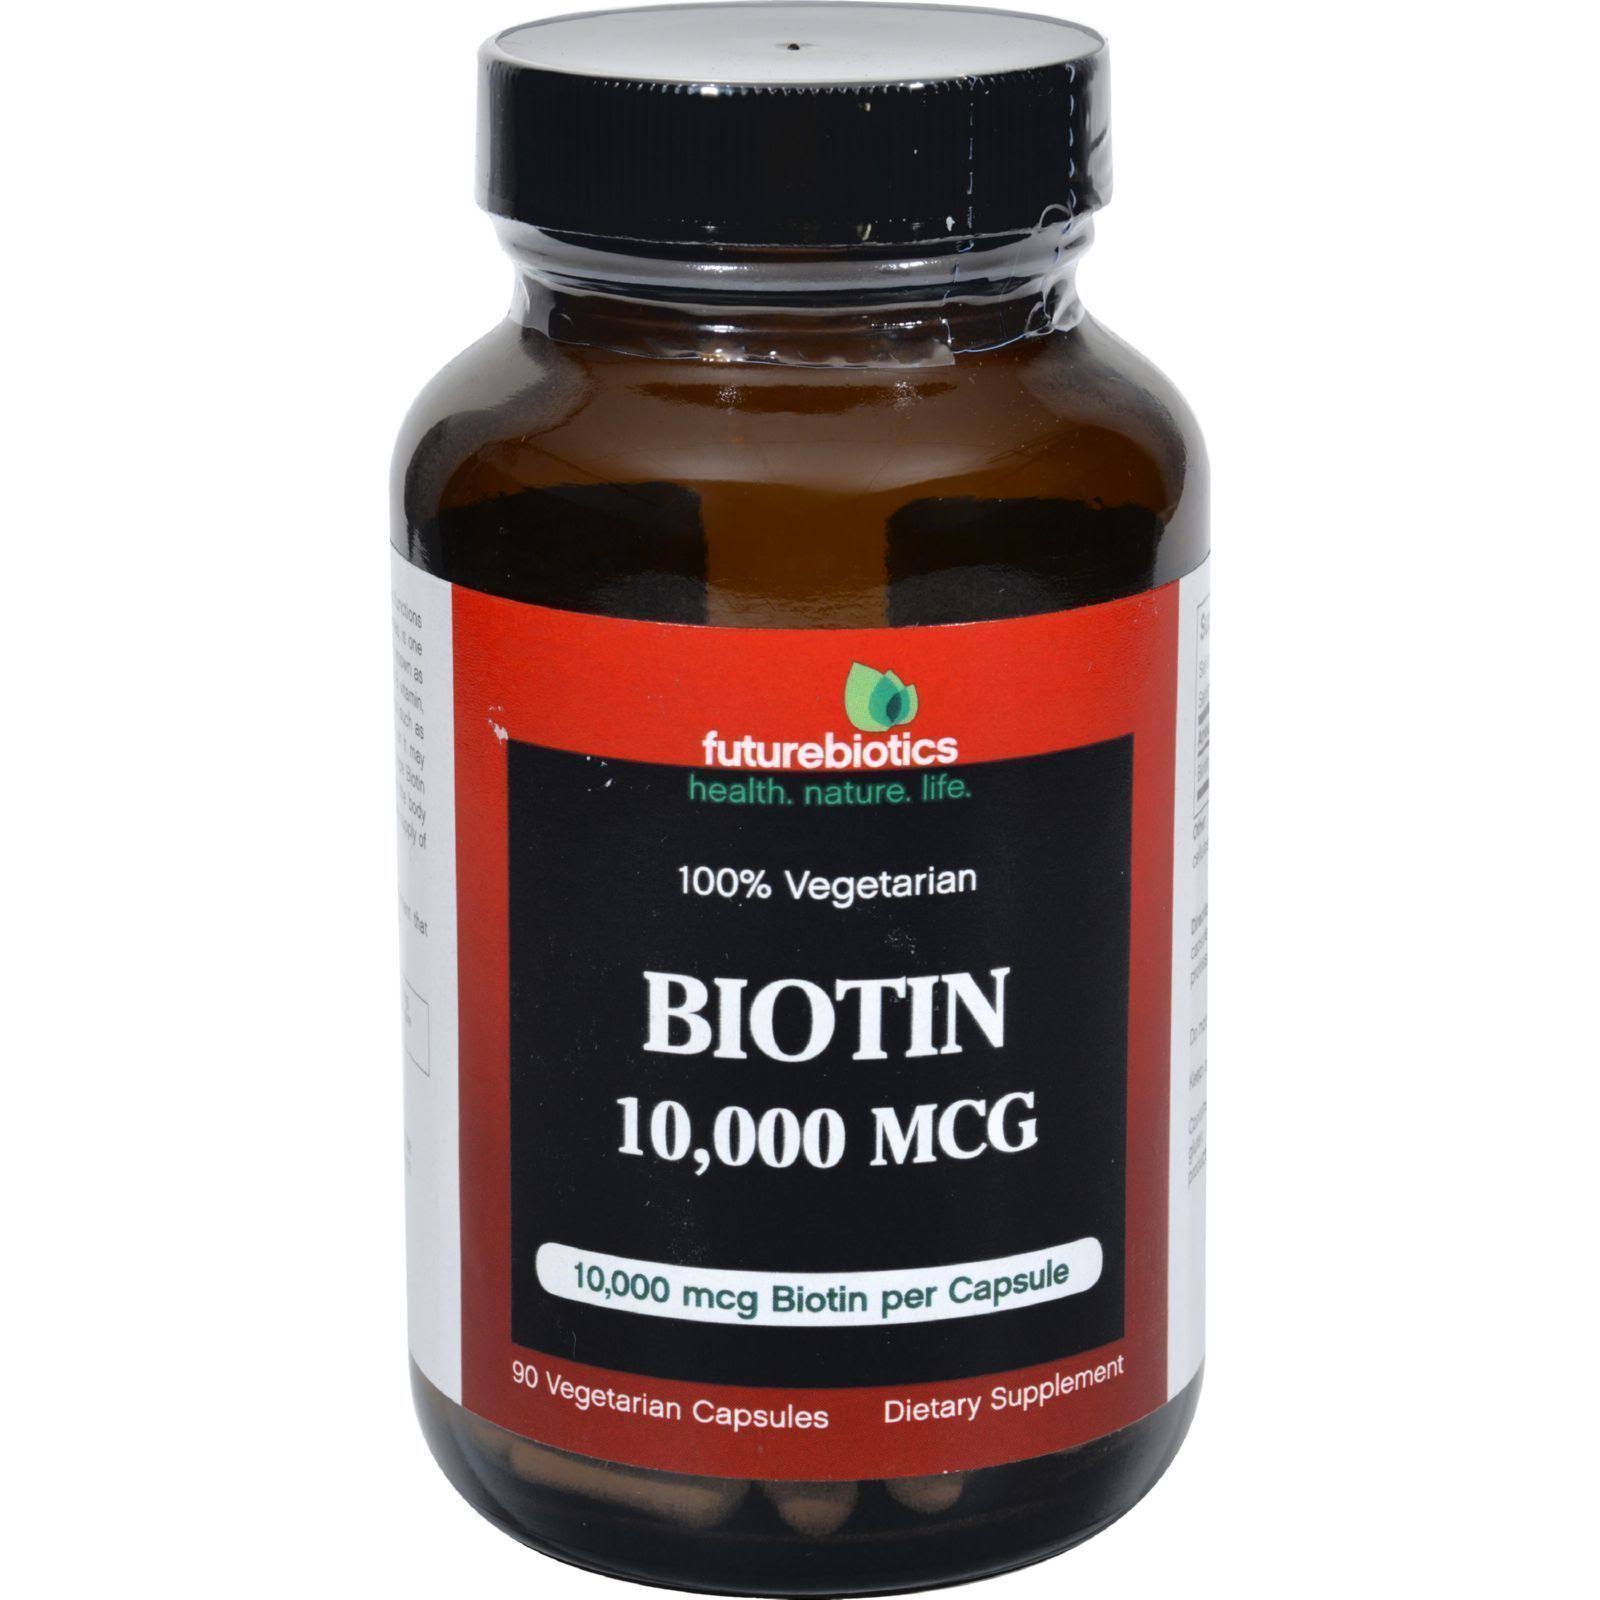 Futurebiotics Biotin Vegetarian Capsules - 10,000mcg, x90